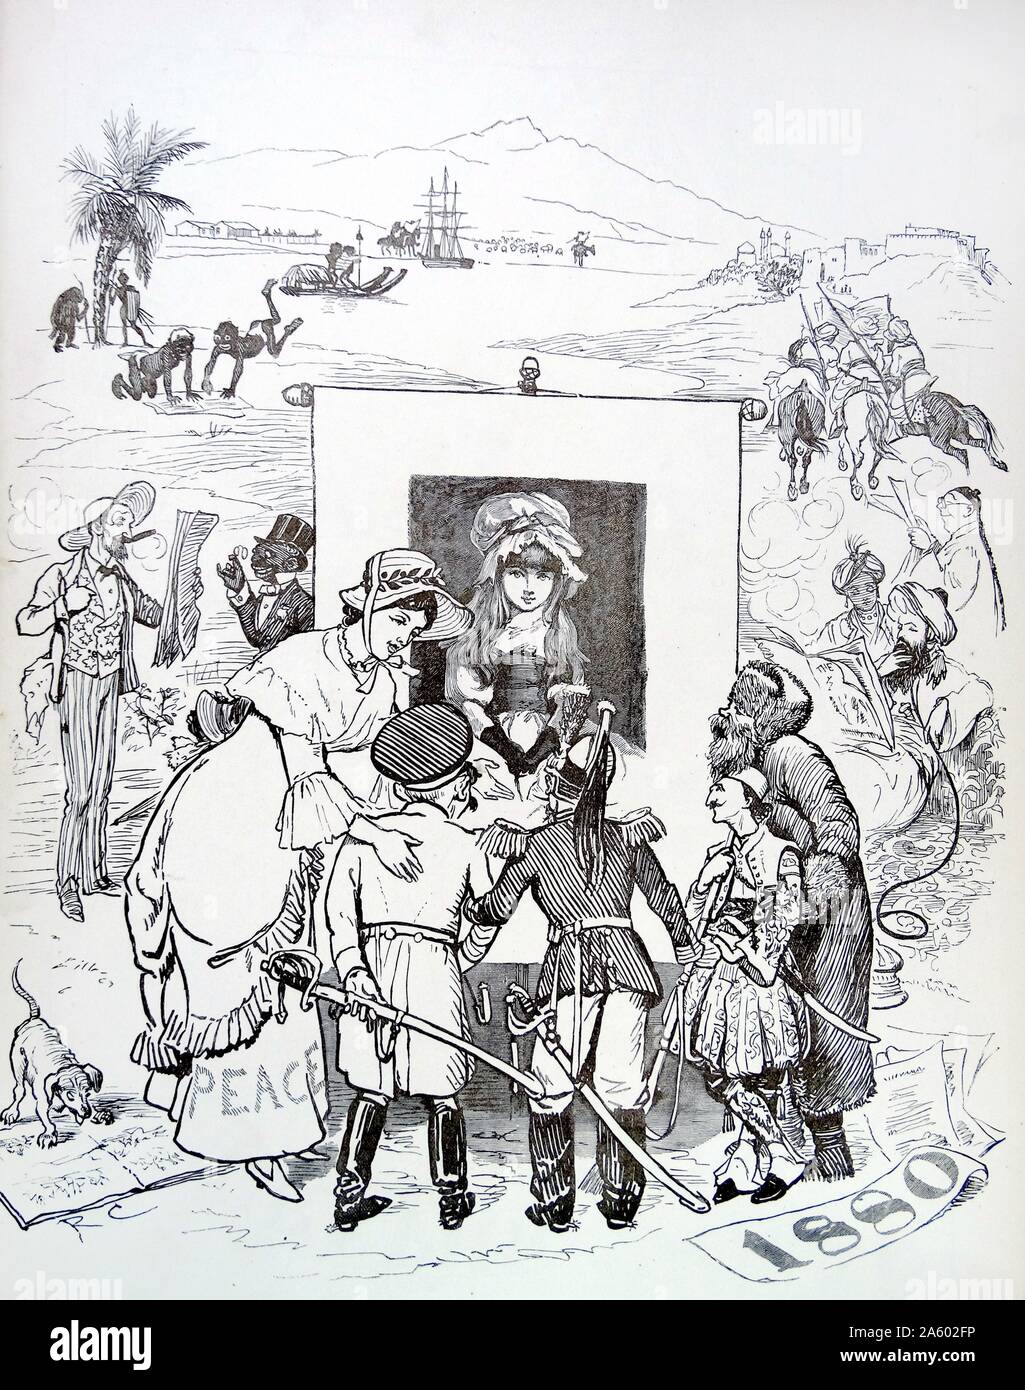 La satire graphique par Randolph Caldecott (1846-1886) un artiste et illustrateur britannique. En date du 19e siècle Banque D'Images